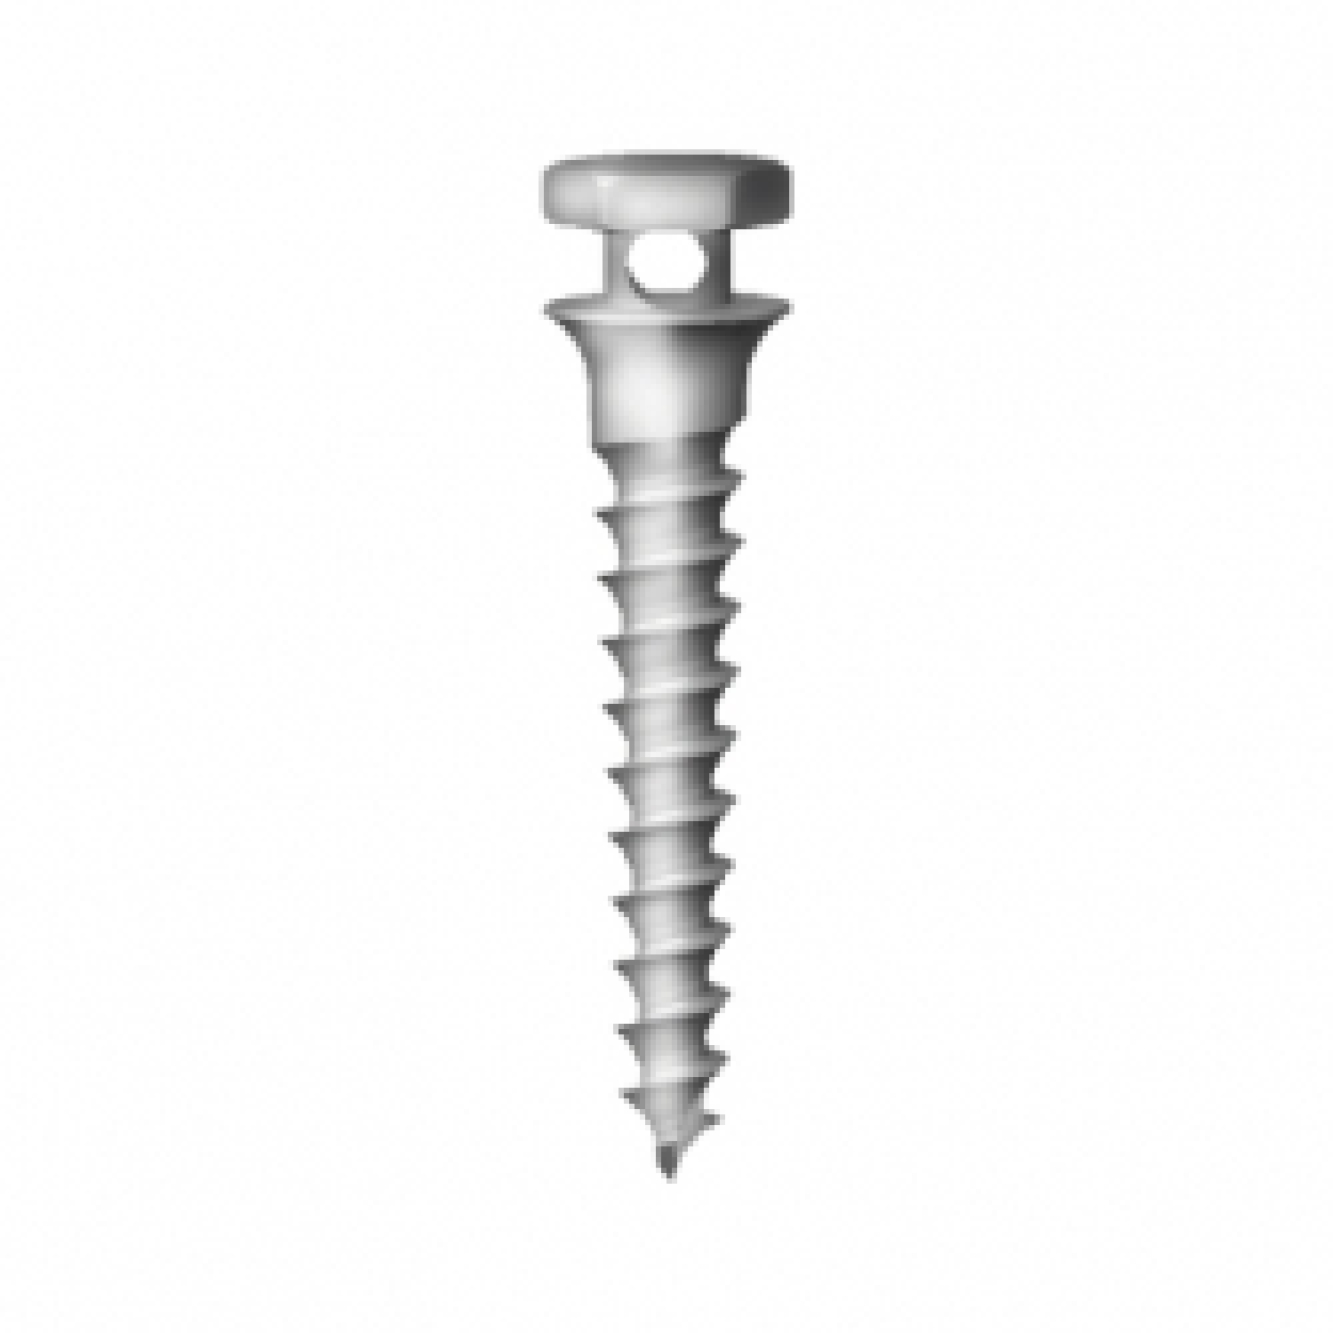 OS-S-16-008 Стоматологический ортодонтический винт для эластичной тяги и проволоки, диаметр 1.6 мм, длина 8 мм, Mr.Curette Tech, Южная Корея